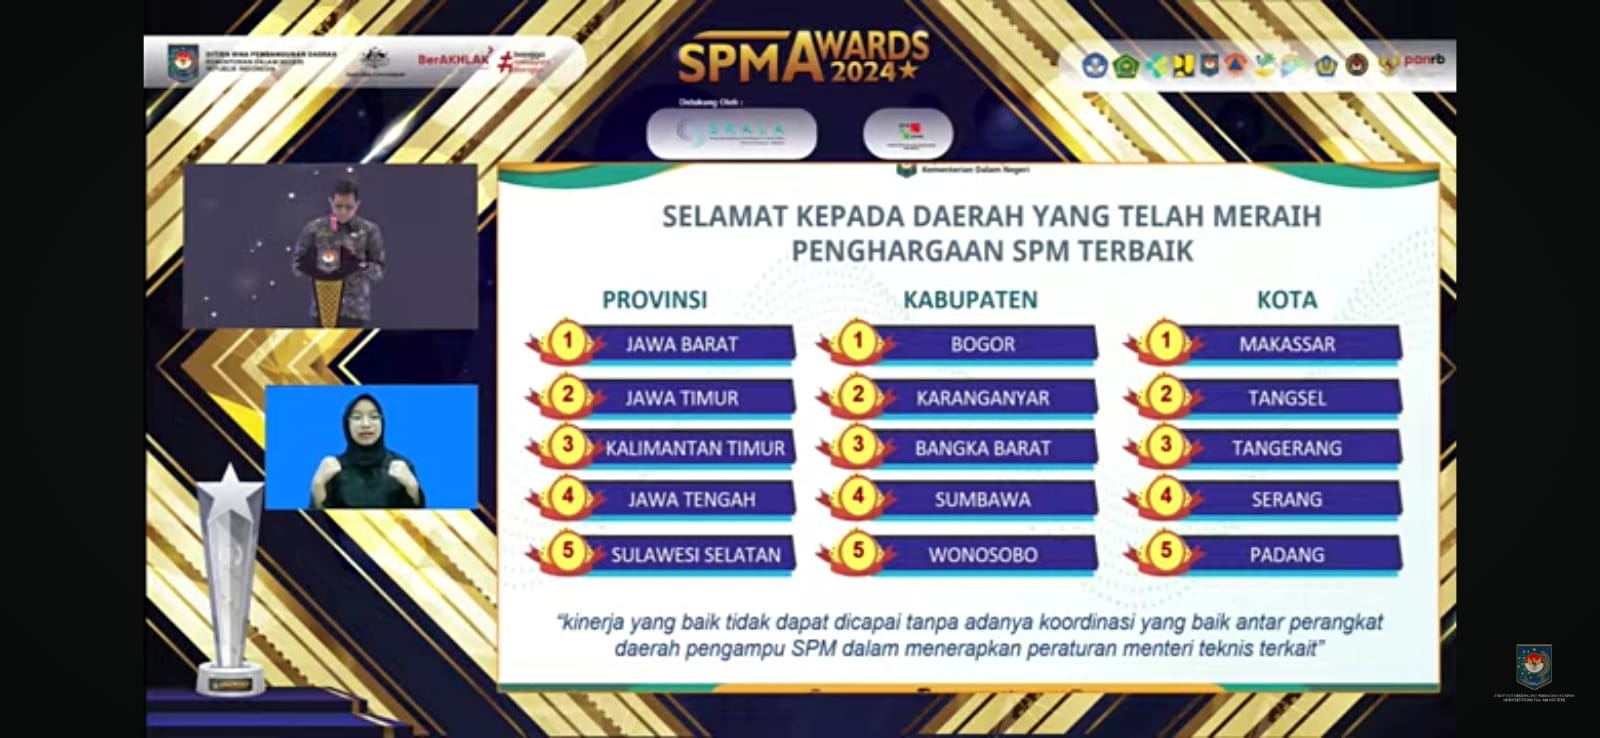 Kota Serang Masuk Nominasi Kota Terbaik Pada SPM Awards 2024